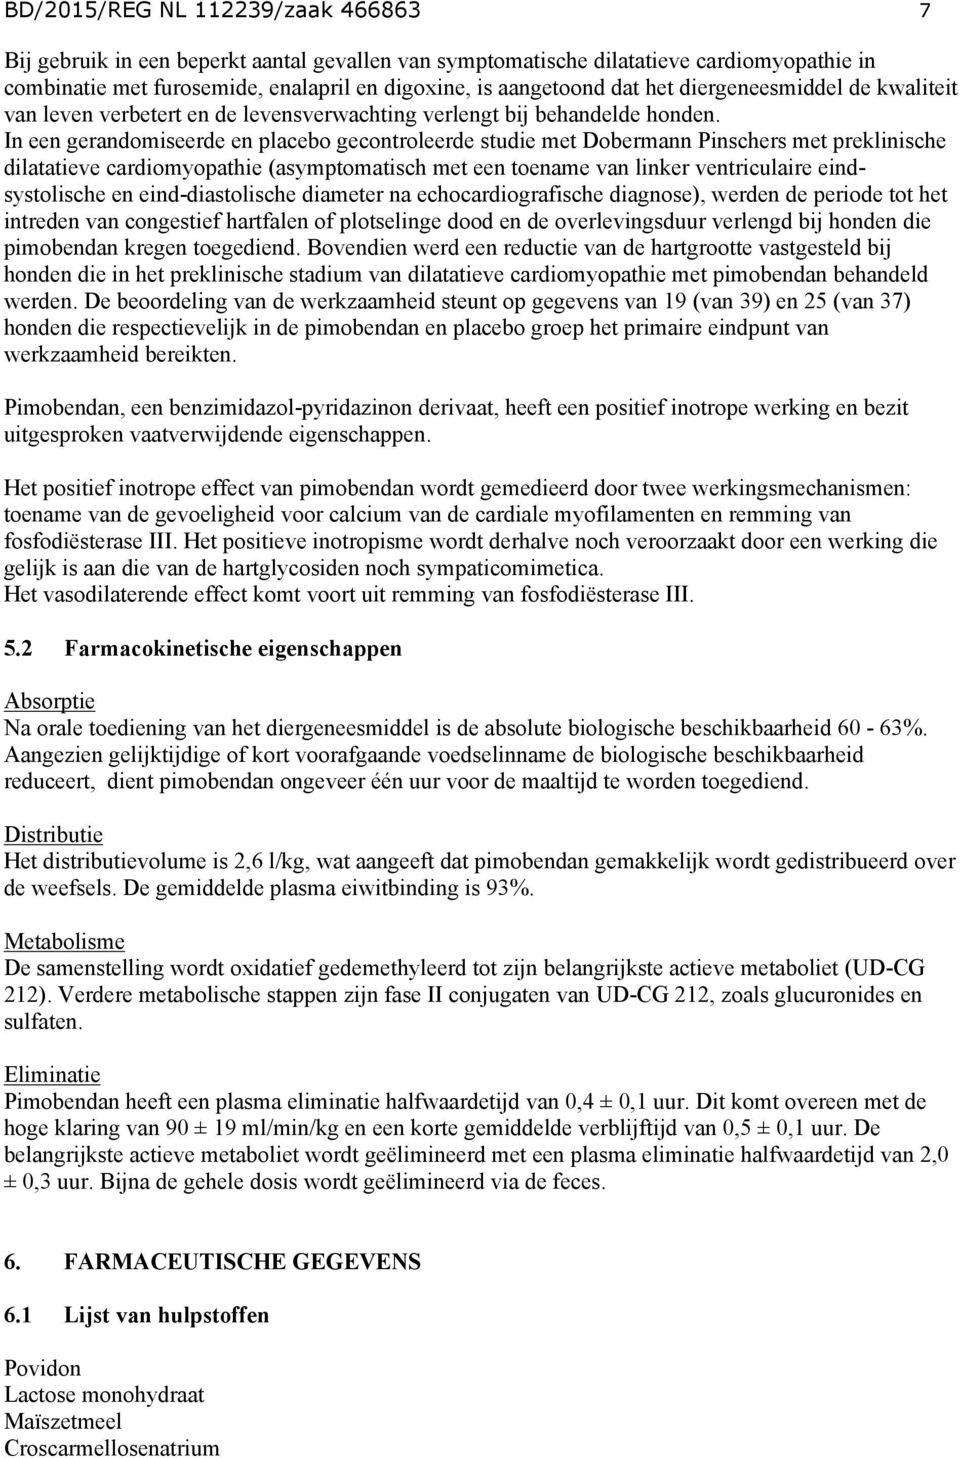 In een gerandomiseerde en placebo gecontroleerde studie met Dobermann Pinschers met preklinische dilatatieve cardiomyopathie (asymptomatisch met een toename van linker ventriculaire eindsystolische